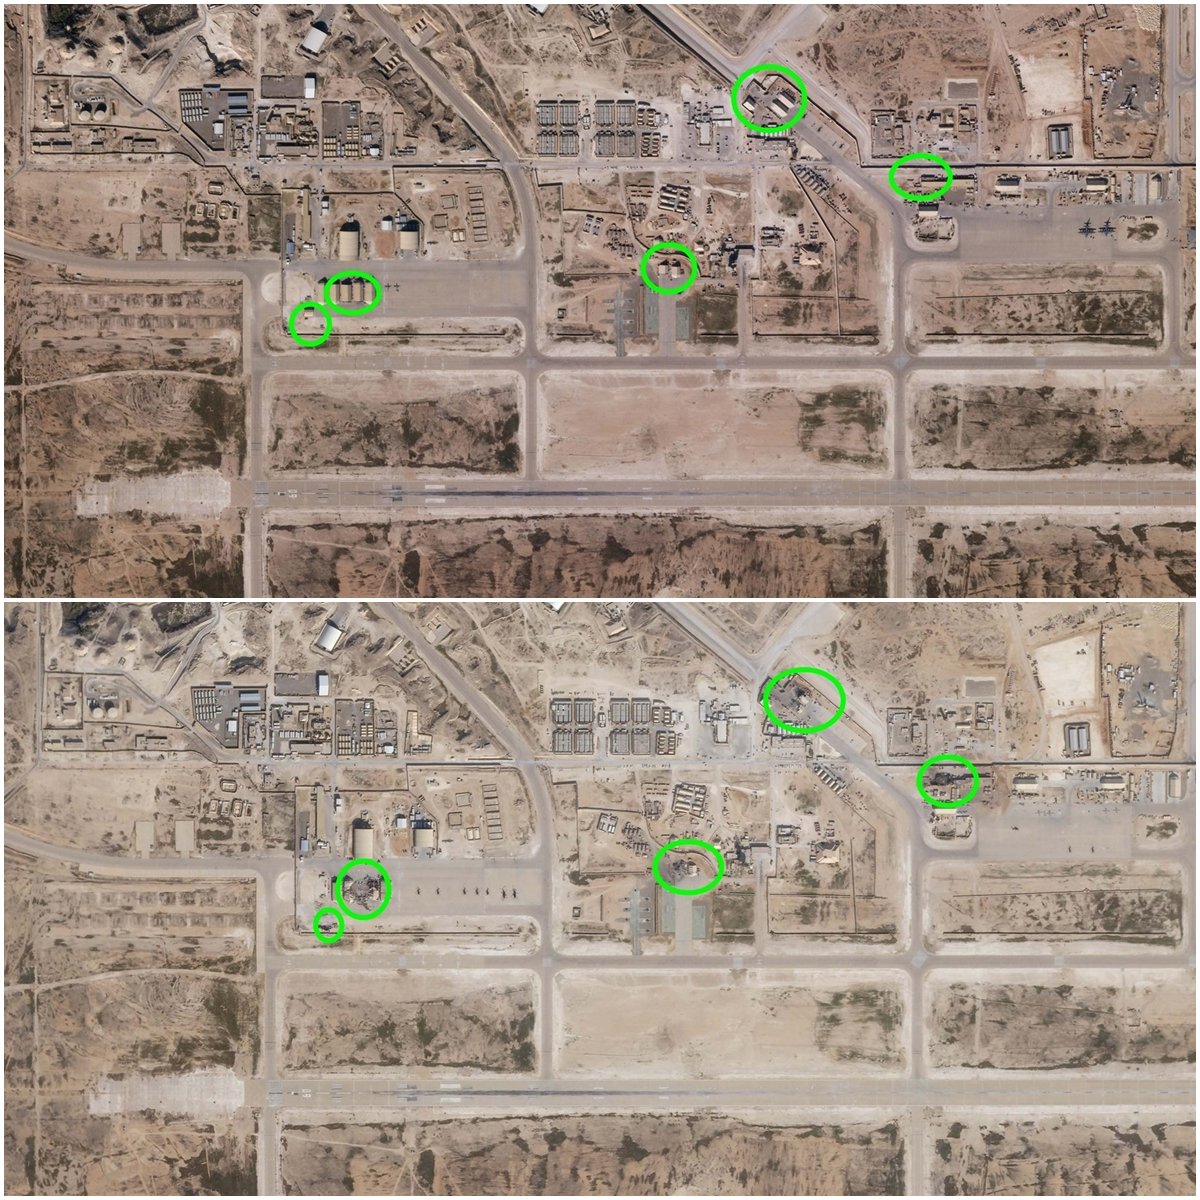 上图为阿萨德空军基地在2019年圣诞节当日的情况，绿圈显示的地区之后被伊朗导弹击中。下图同一地点在1月8日后的情况，与圣诞节的图片相比，绿圈内的地方或建筑物明显受到破坏。